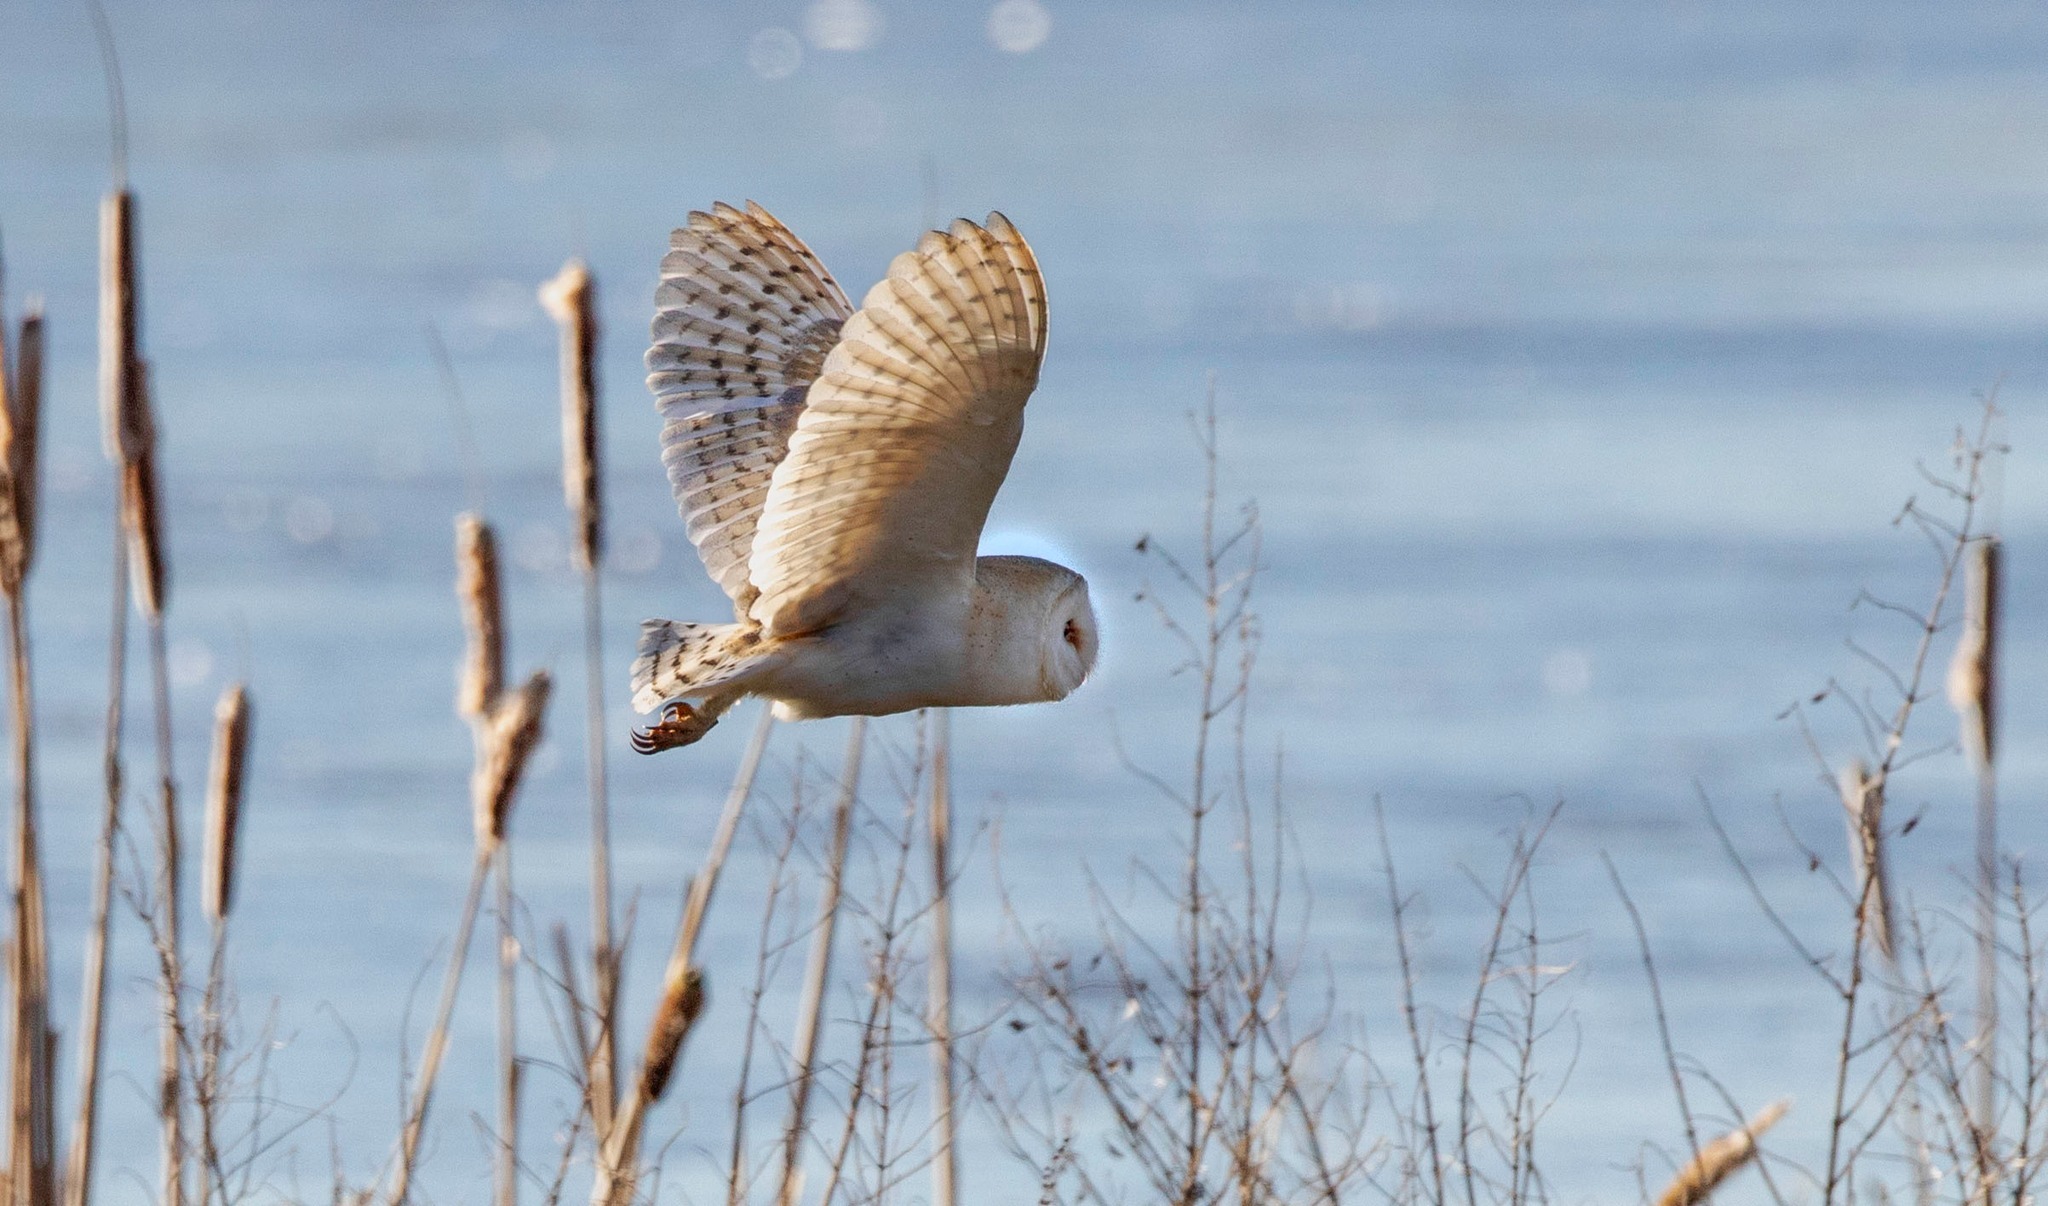 Barn owl mid flight by Ann ODonnell